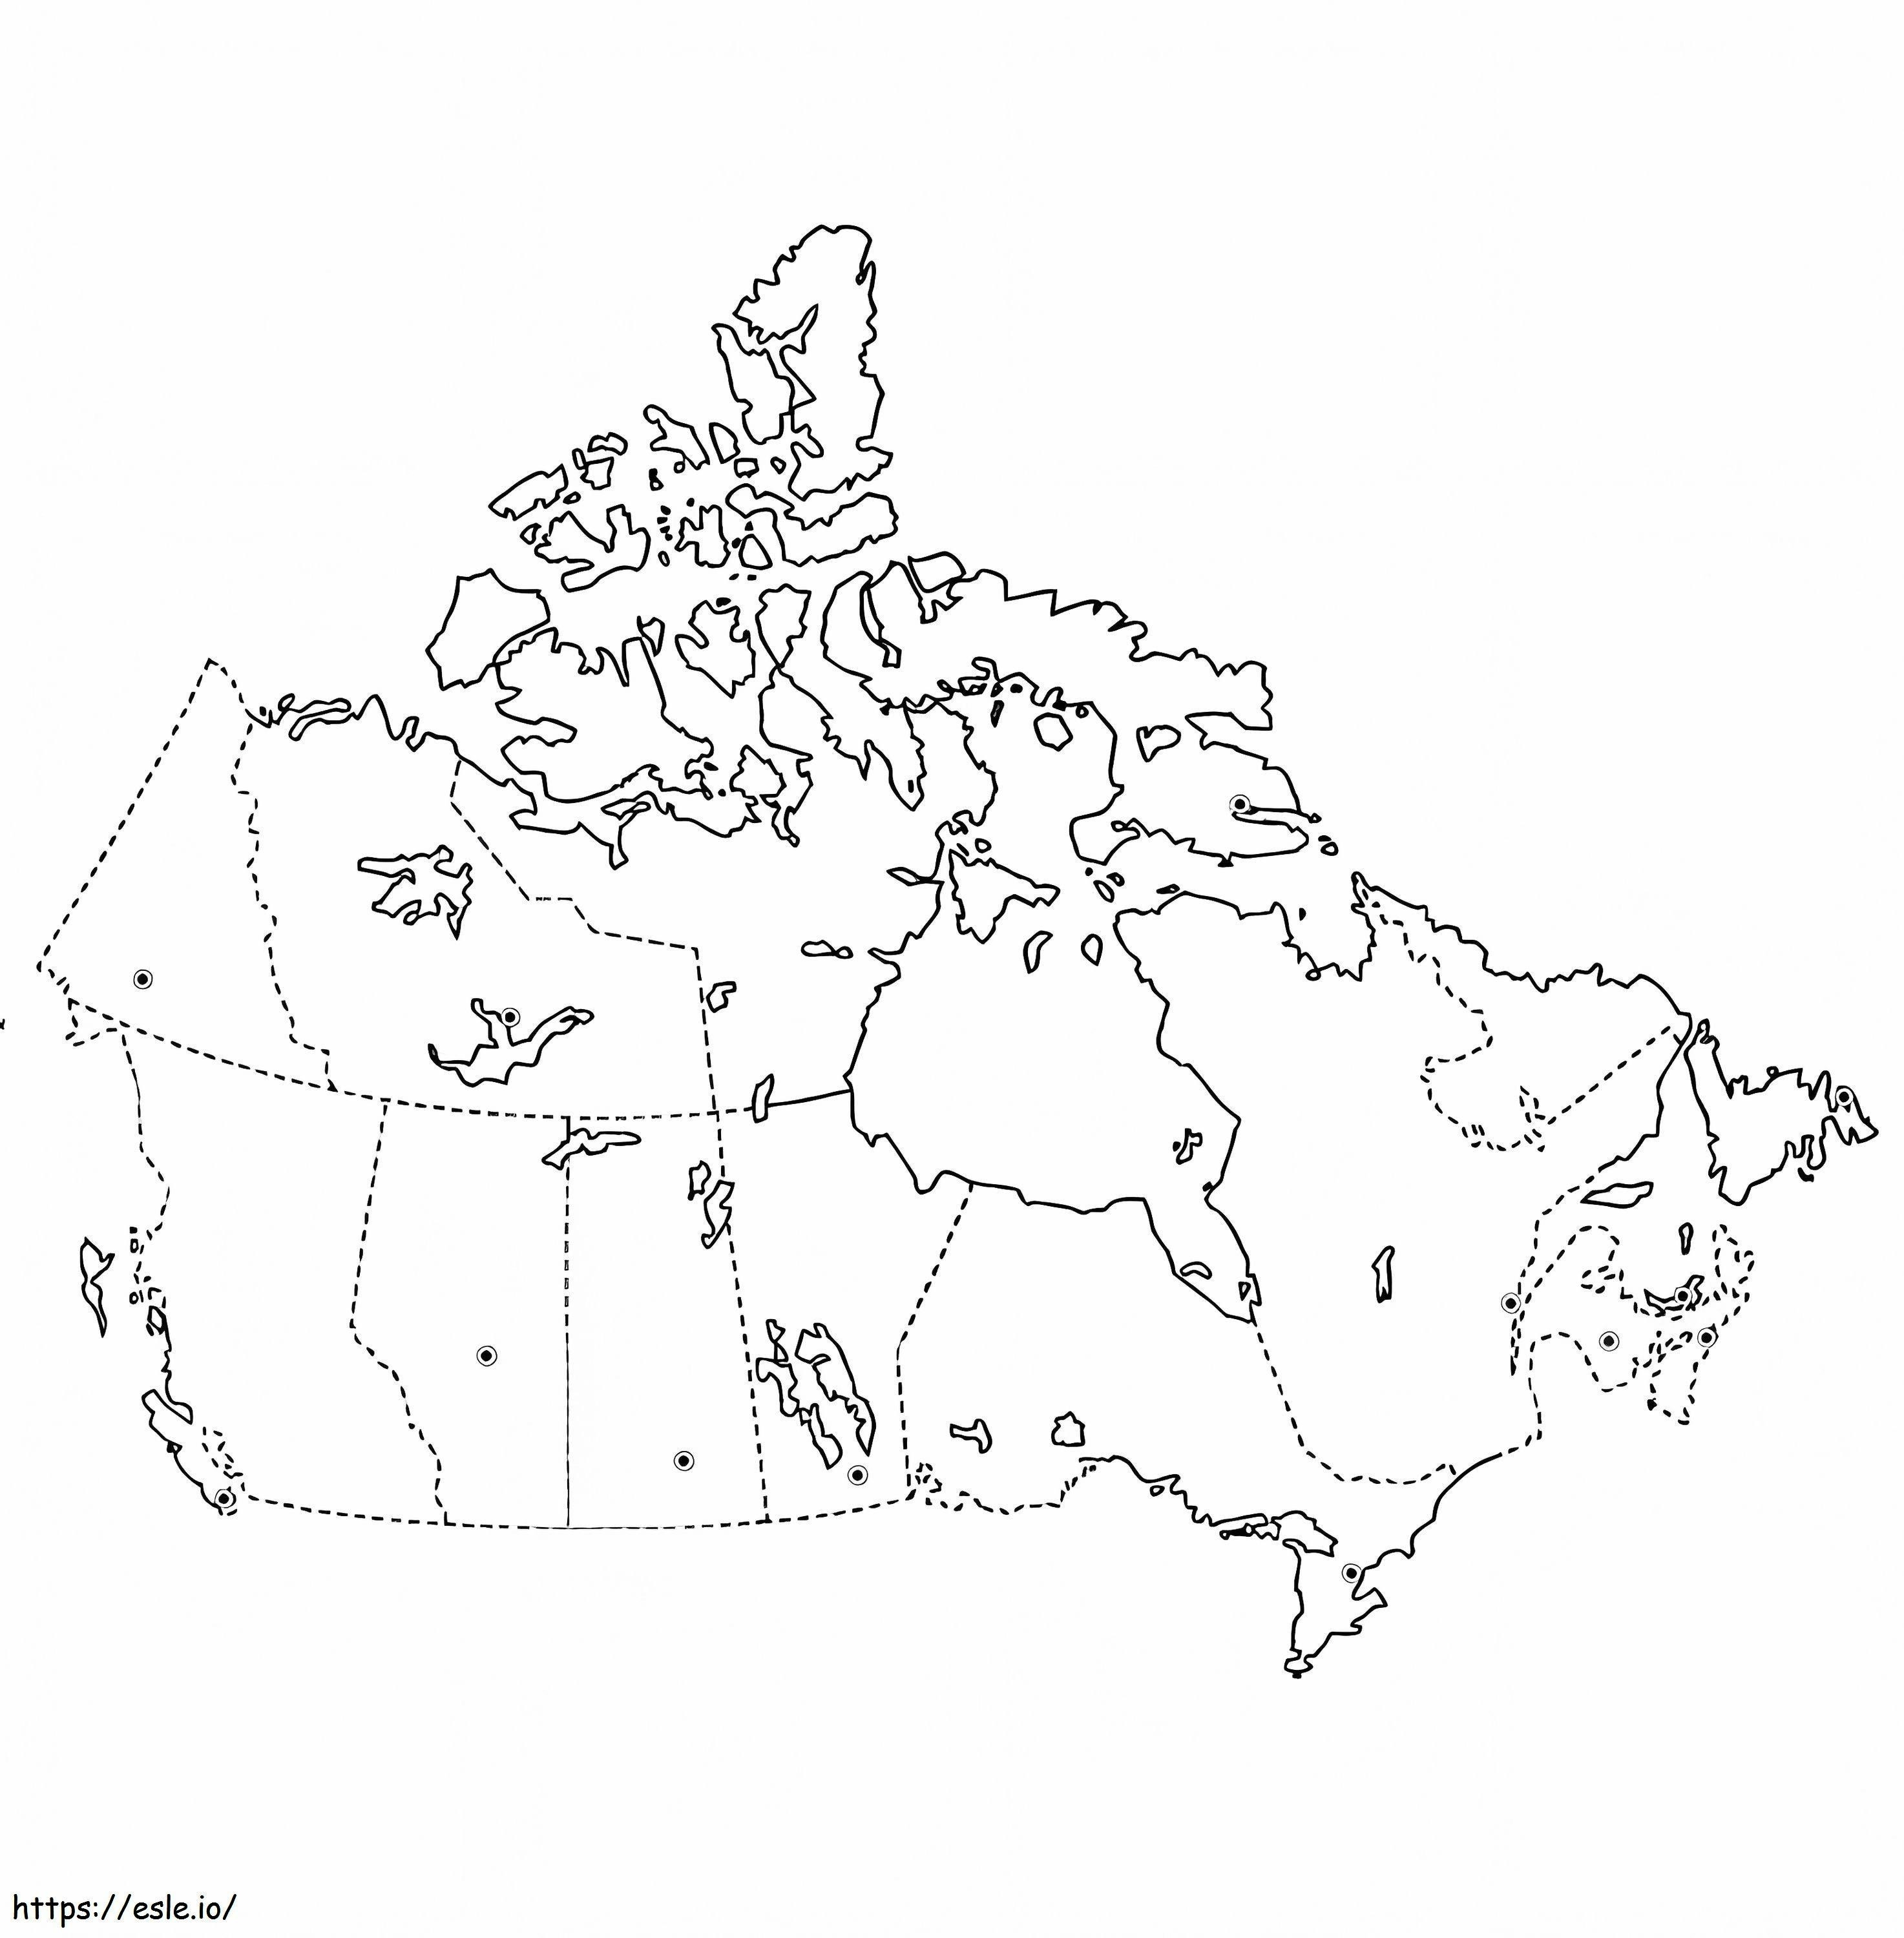 Karte von Kanada 7 ausmalbilder